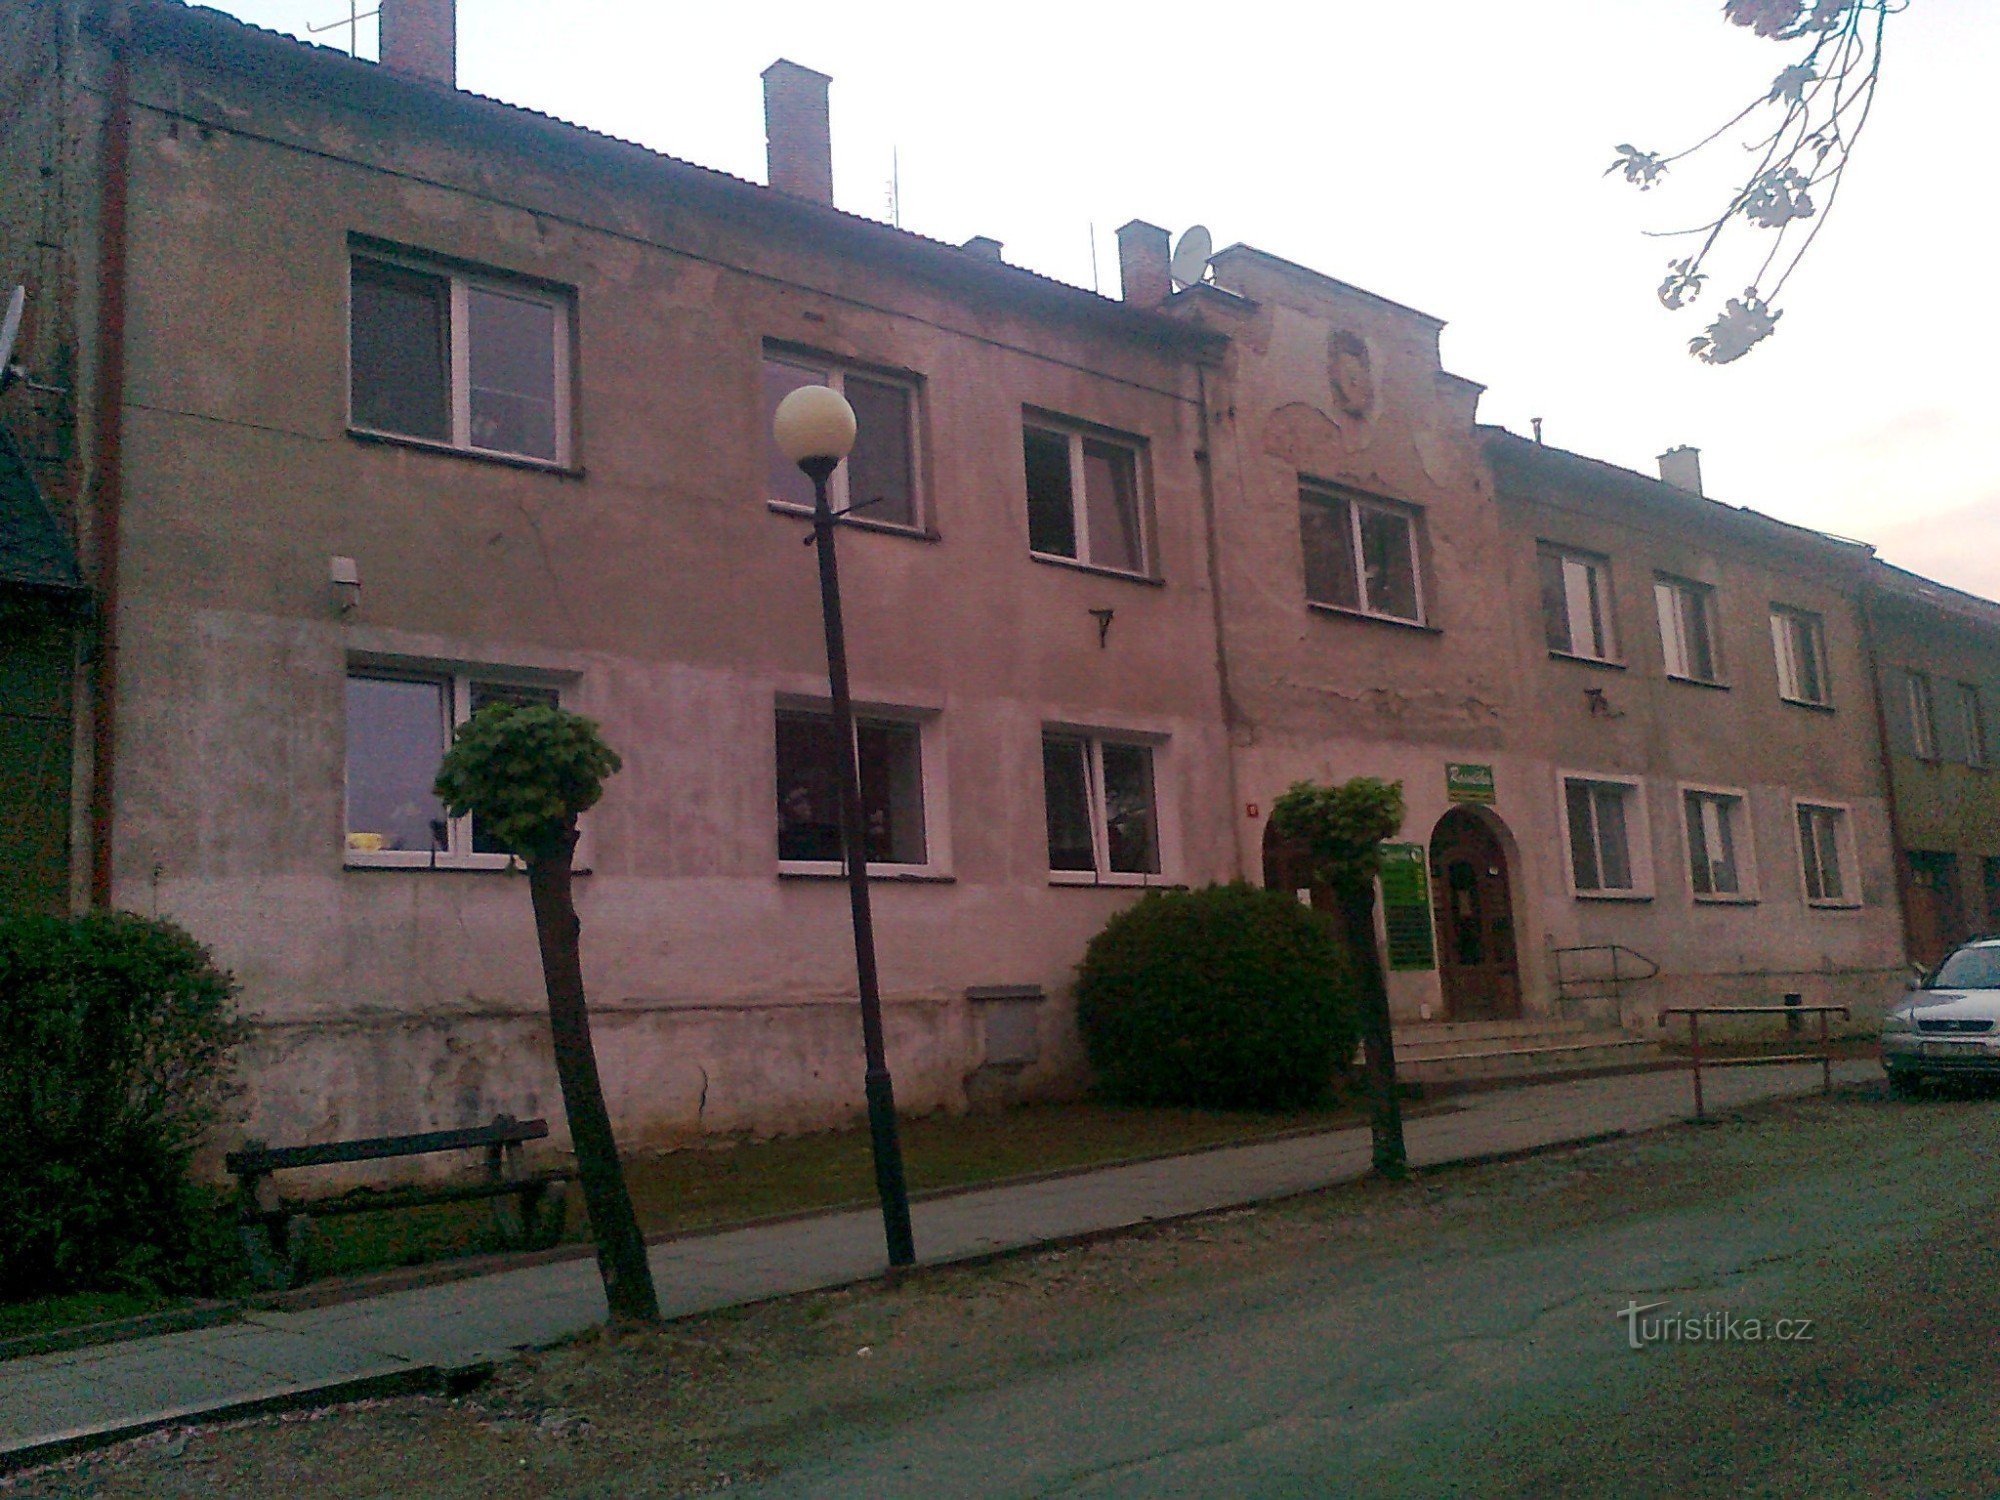 a house at Náměstí Míru No. 51 called MODRÁ HVĖZDA